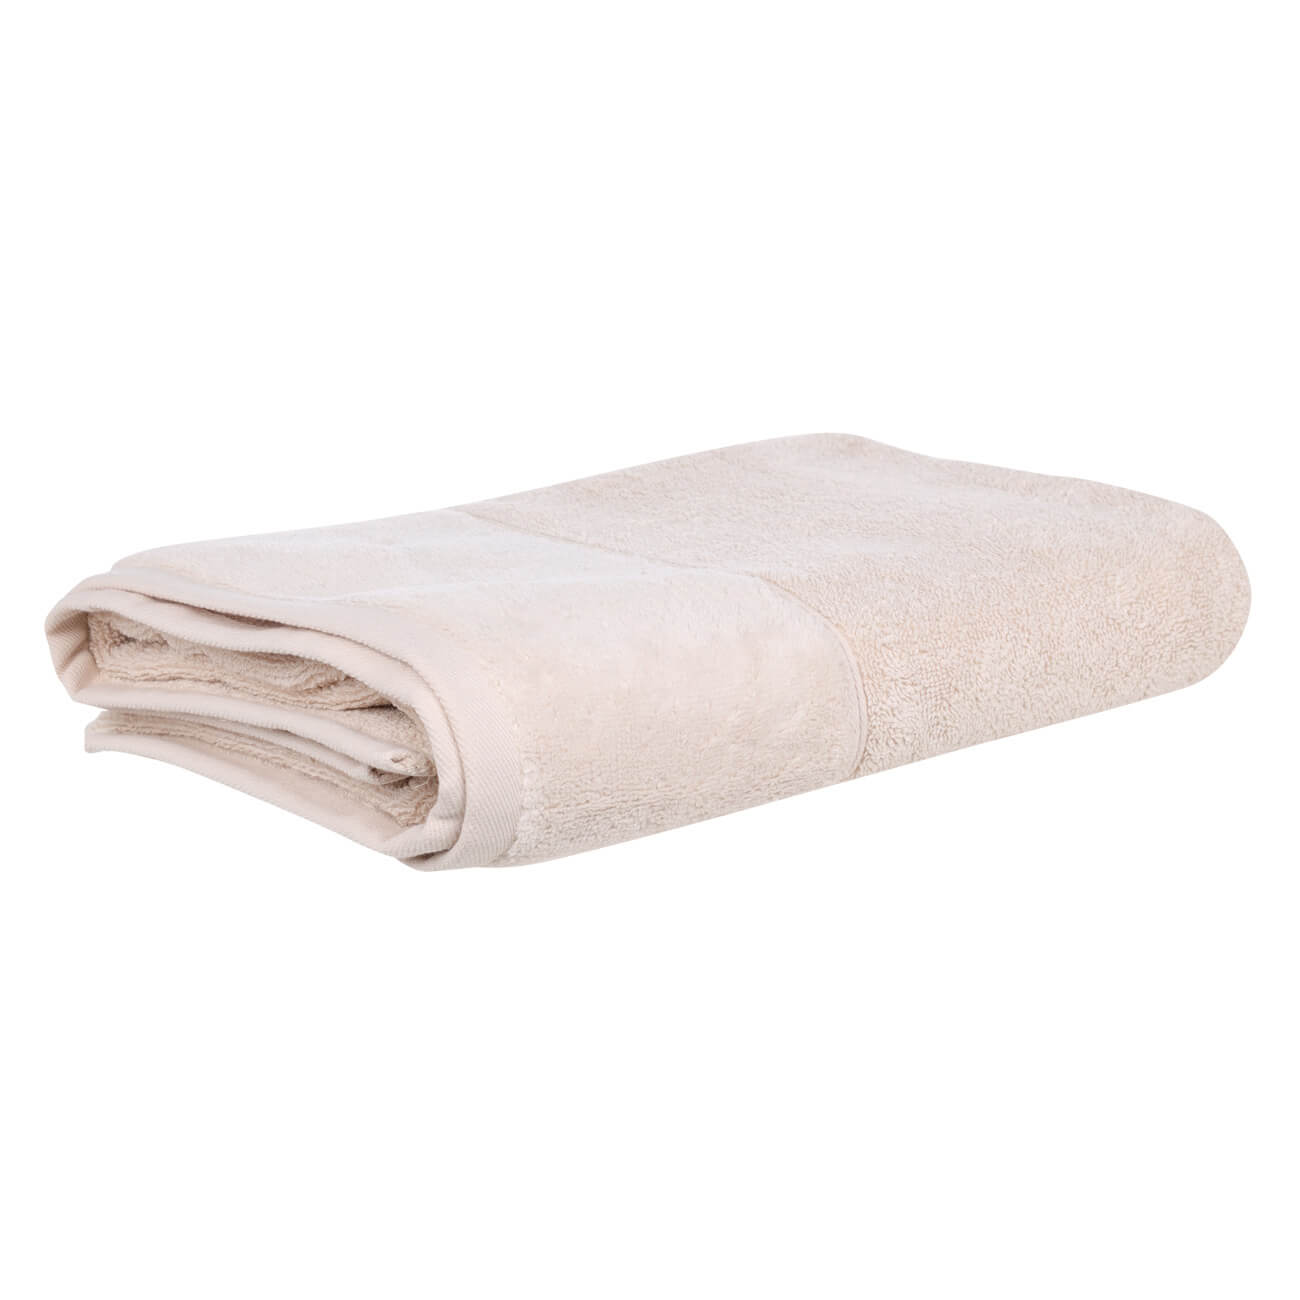 Полотенце, 70х140 см, хлопок, бежевое, Velvet touch полотенце eumenia 100x150 см серое